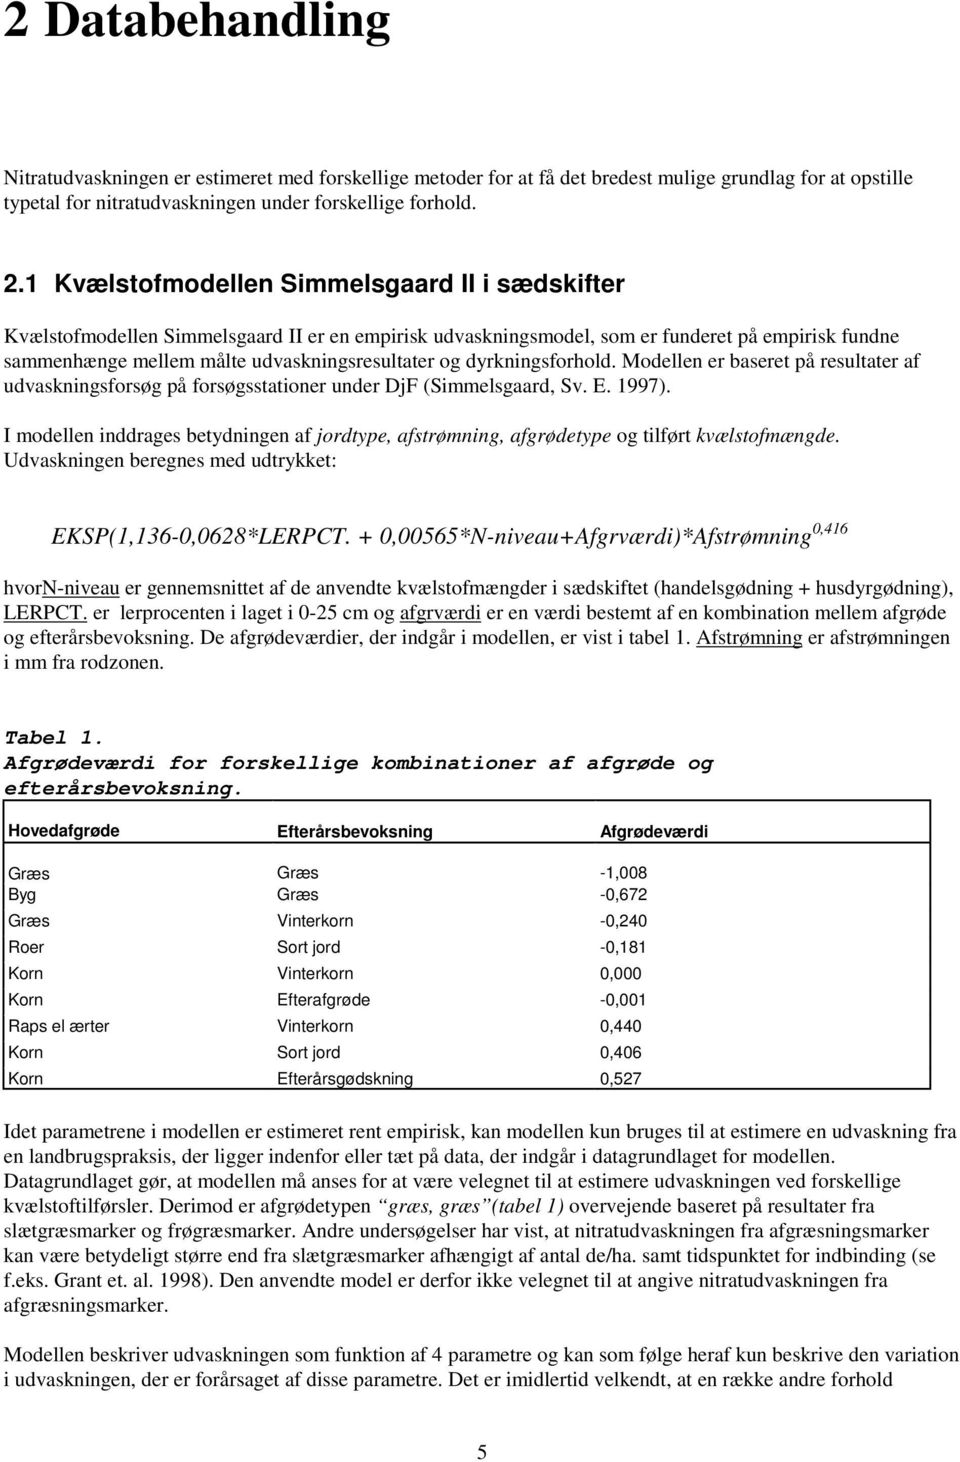 dyrkningsforhold. Modellen er baseret på resultater af udvaskningsforsøg på forsøgsstationer under DjF (Simmelsgaard, Sv. E. 1997).